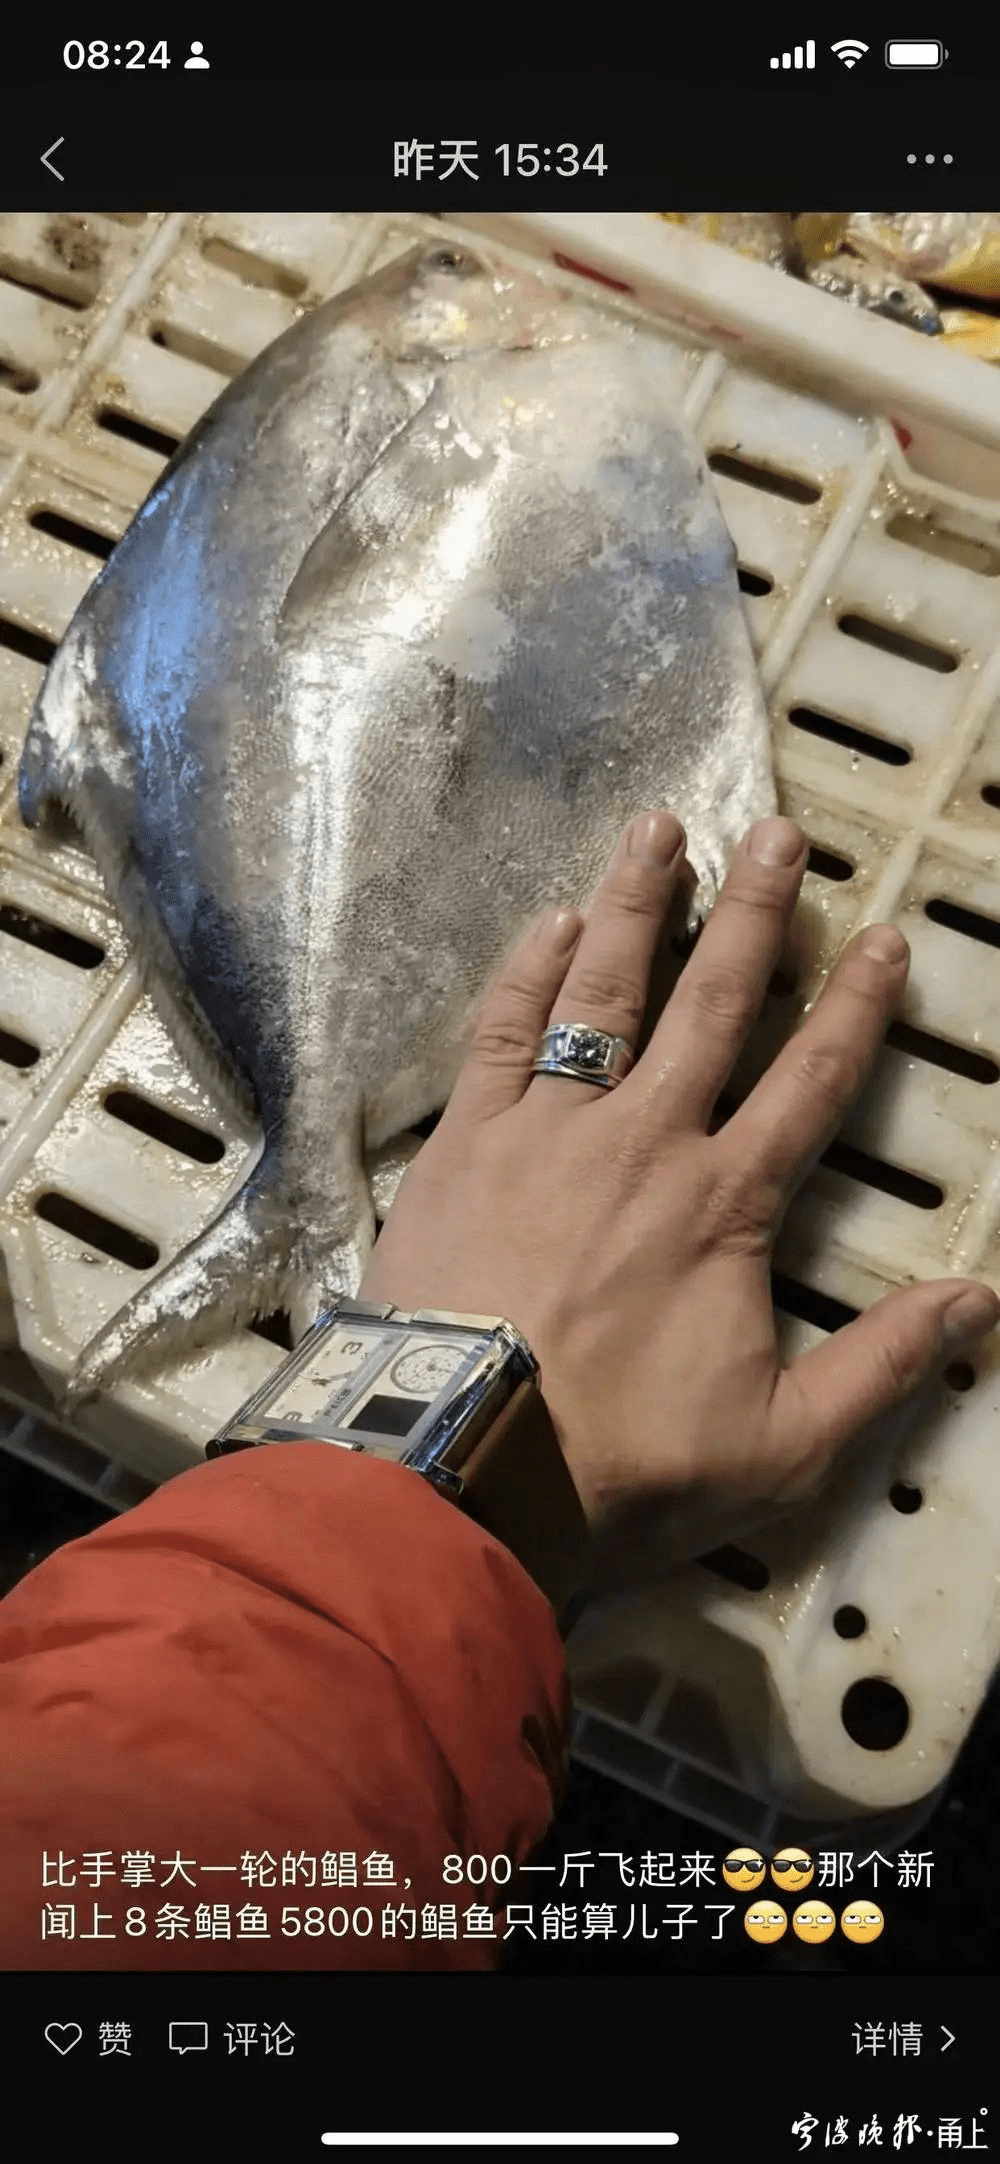 比手掌一般大的銀䱽魚，人民幣1600元一公斤，非常誇張。